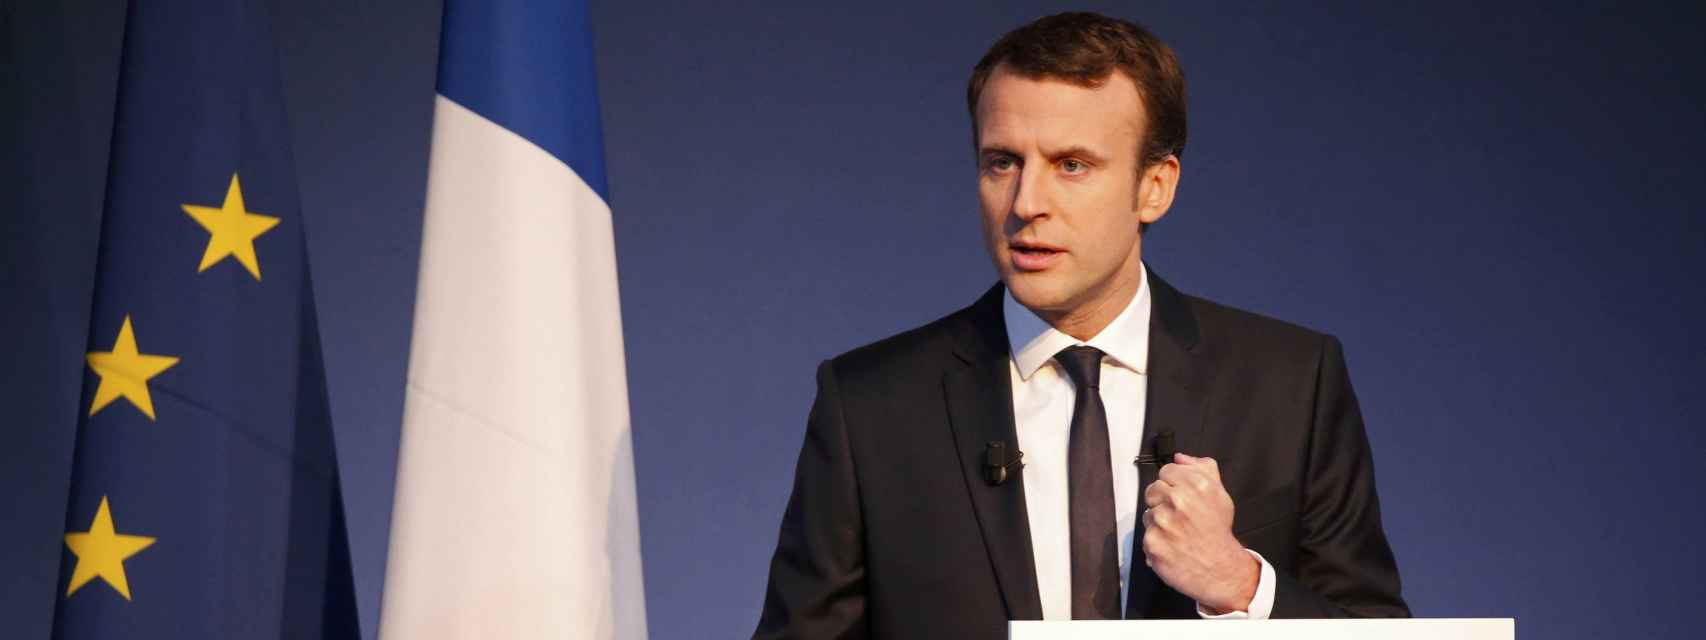 El candidato socioliberal, Emmanuel Macron.